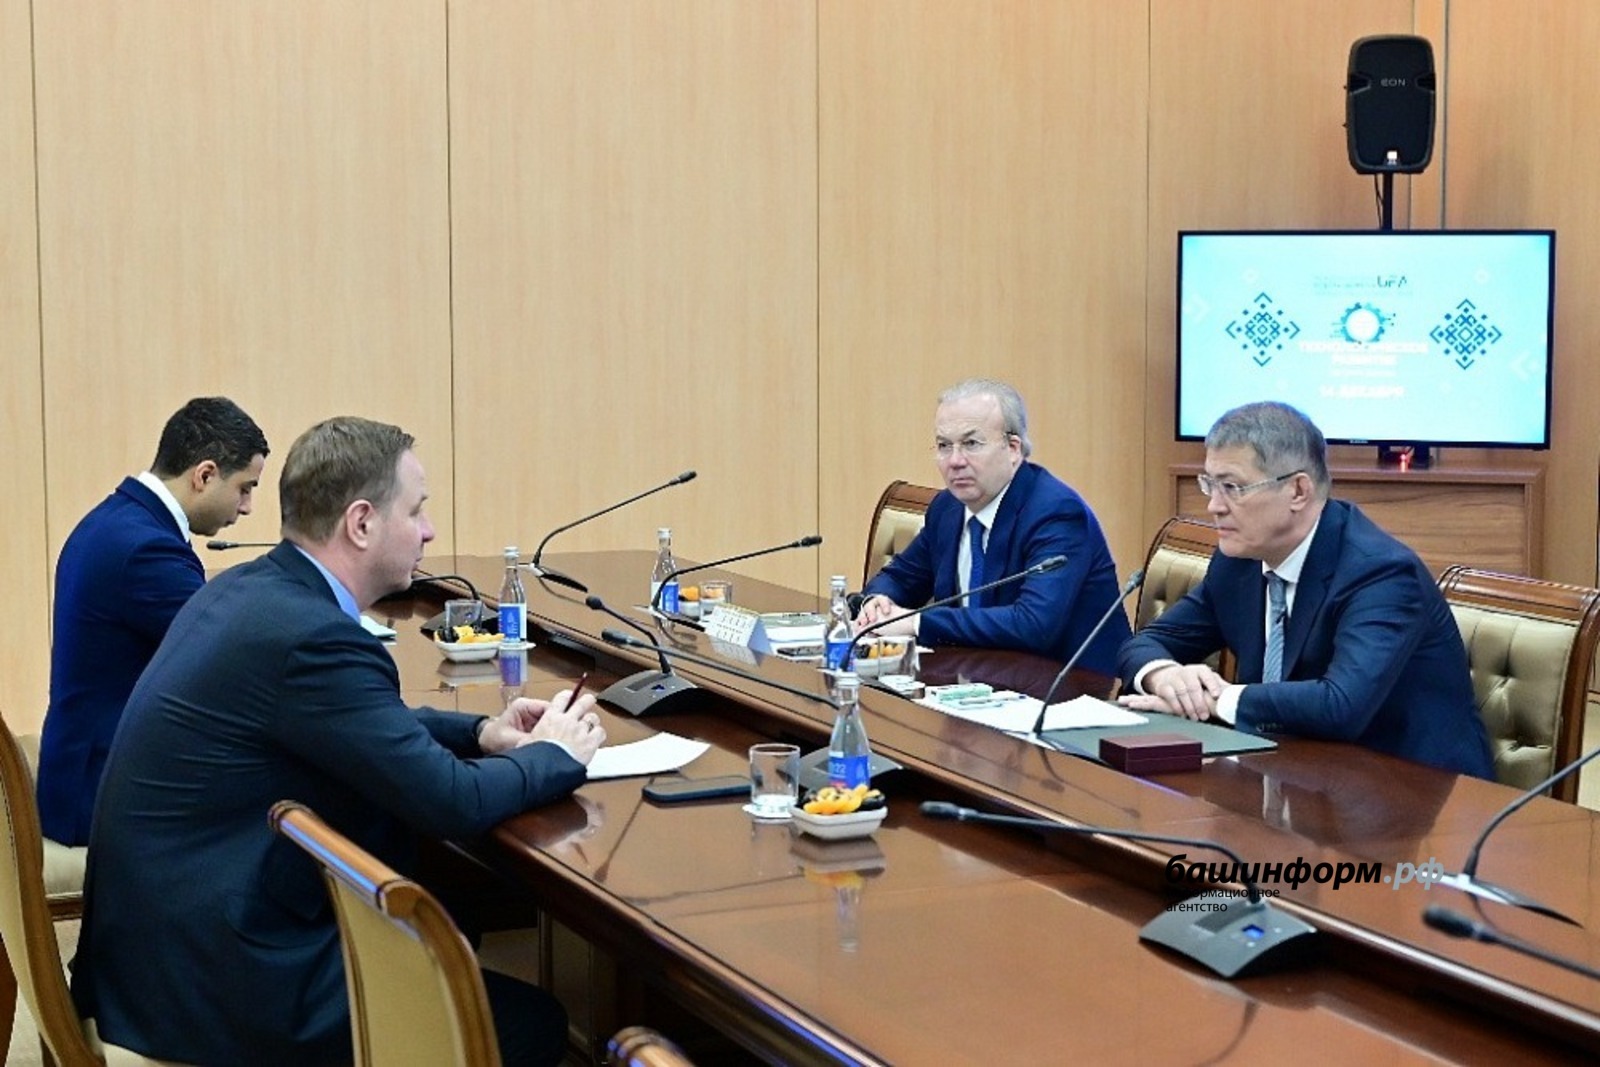 Встреча главы Республики Башкортостан Радия Хабирова с председателем Совета директоров «БСК» Андреем Пилипенко прошла продуктивно